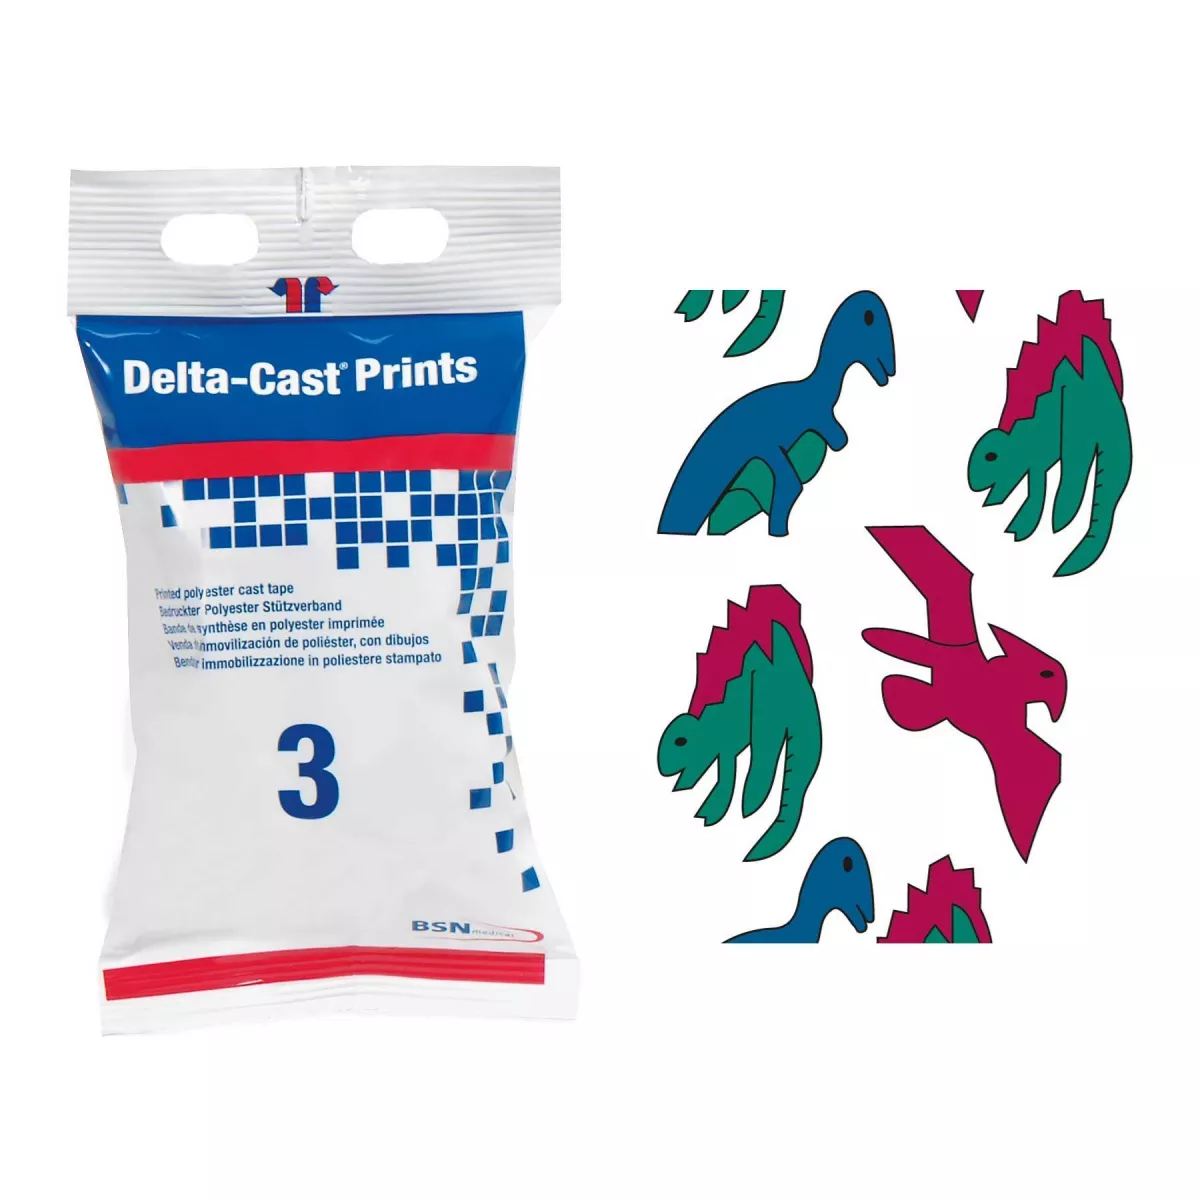 Fasa de imobilizare din rasina Delta-Cast Prints Dyno 5cm x 3.6m